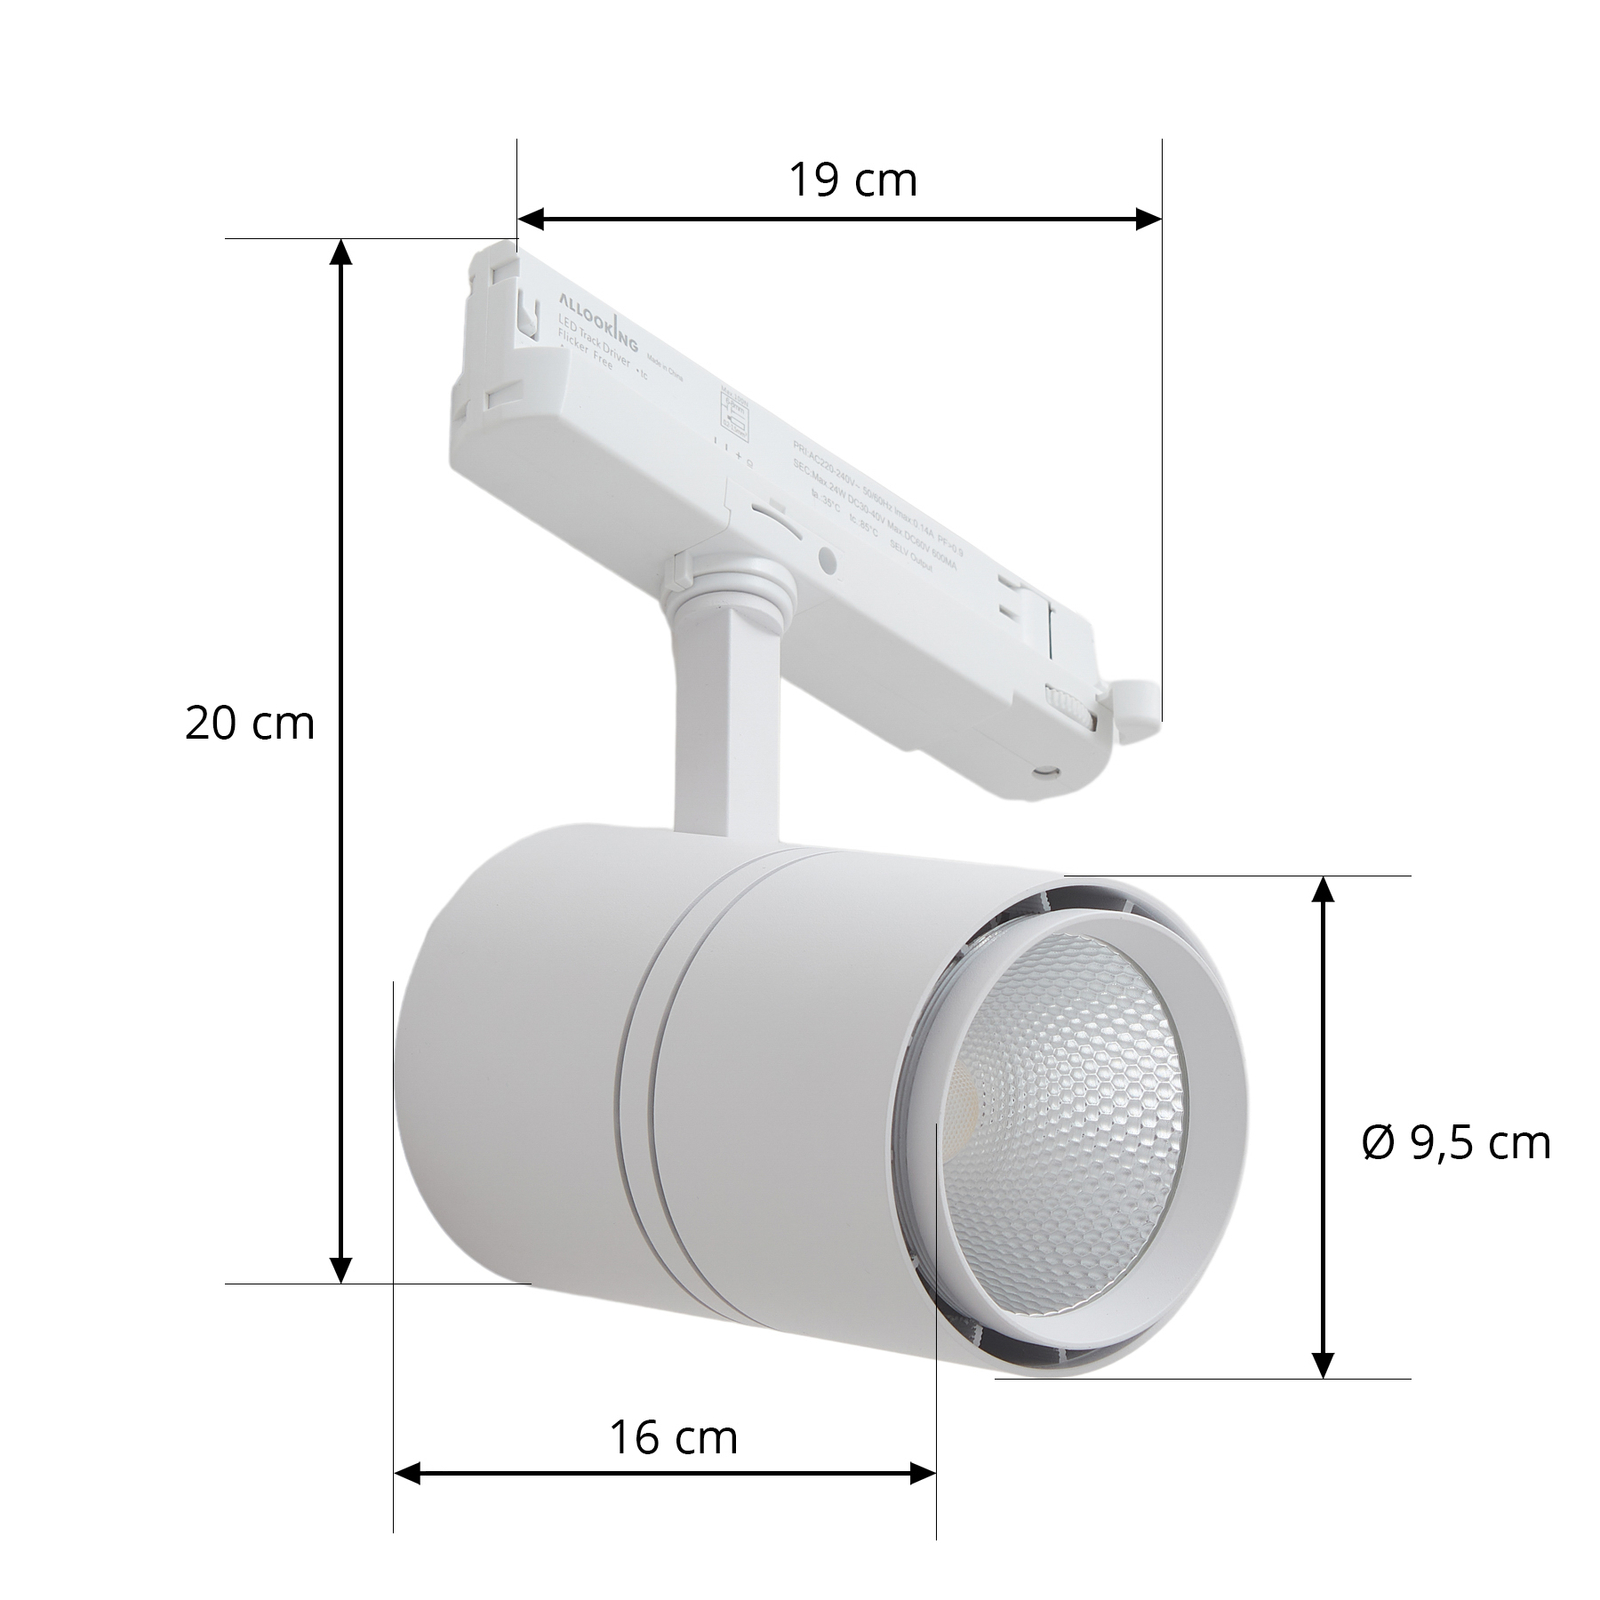 Projetor de calha LED Arcchio Marny, branco, trifásico, regulável